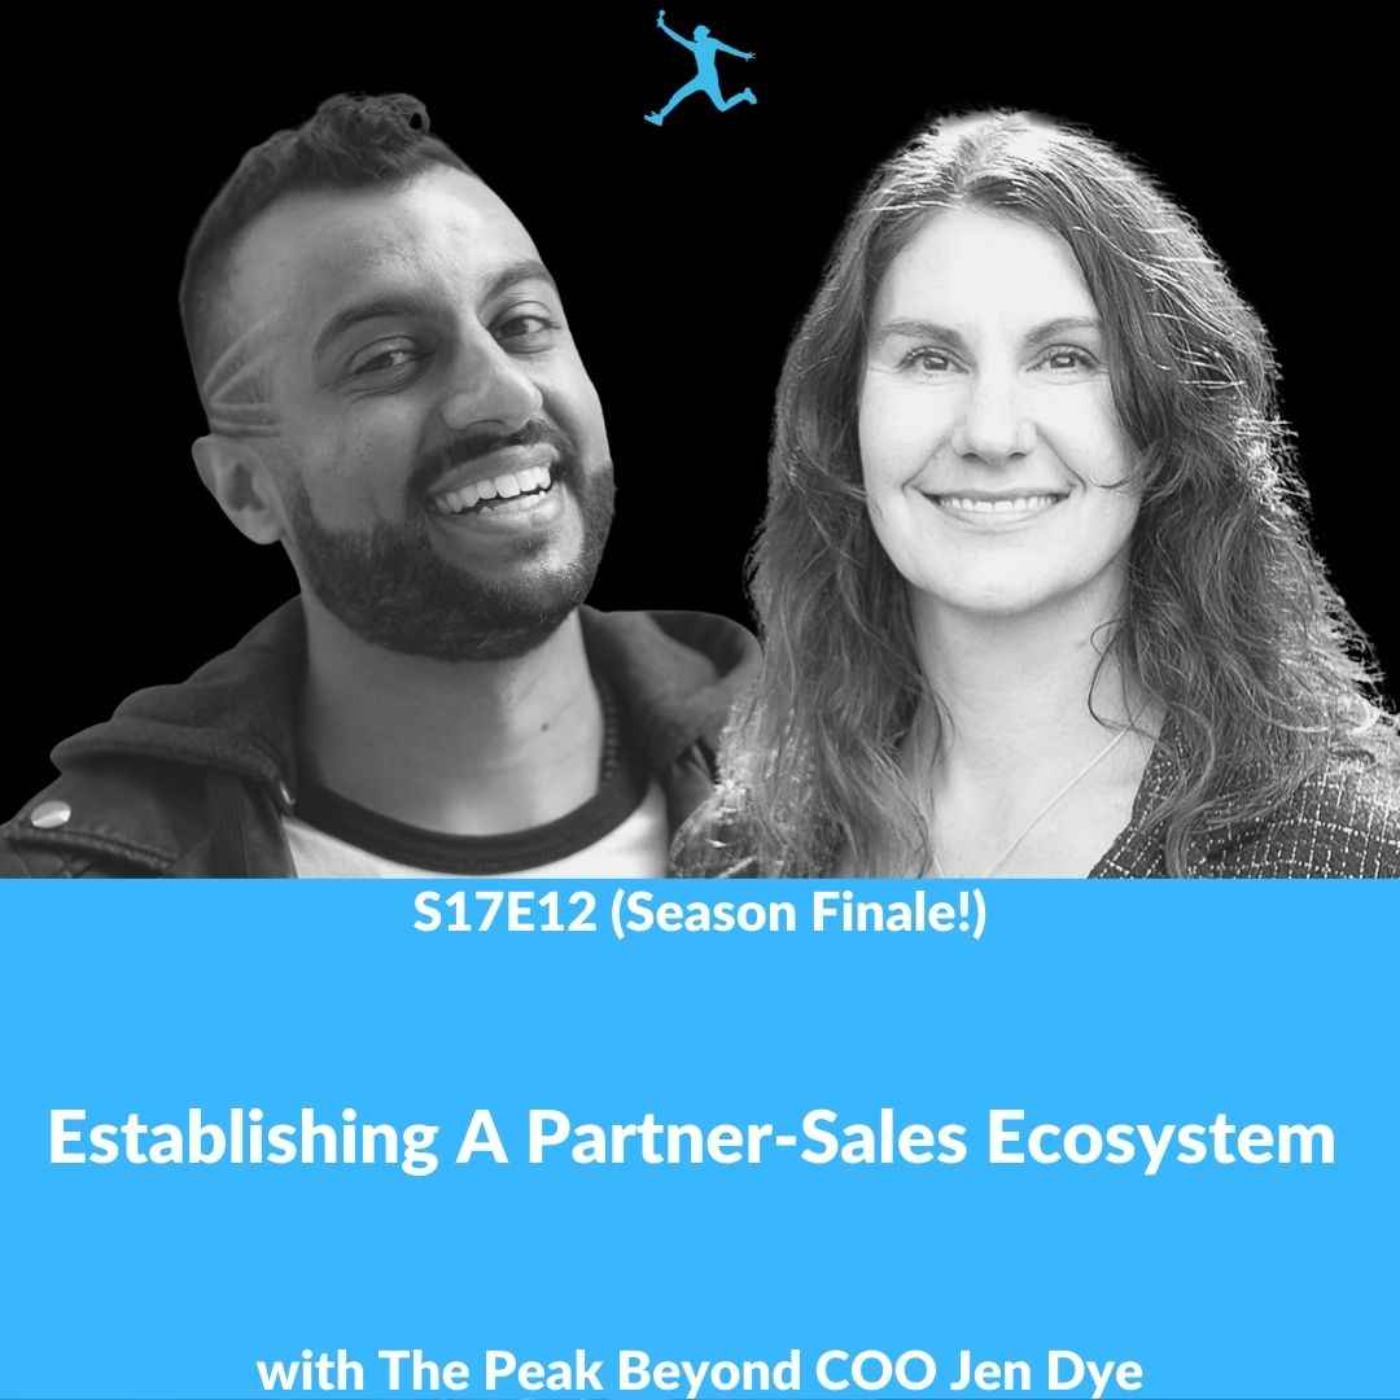 S17E12: Establishing A Partner-Sales Ecosystem with The Peak Beyond COO Jen Dye (Season Finale!)